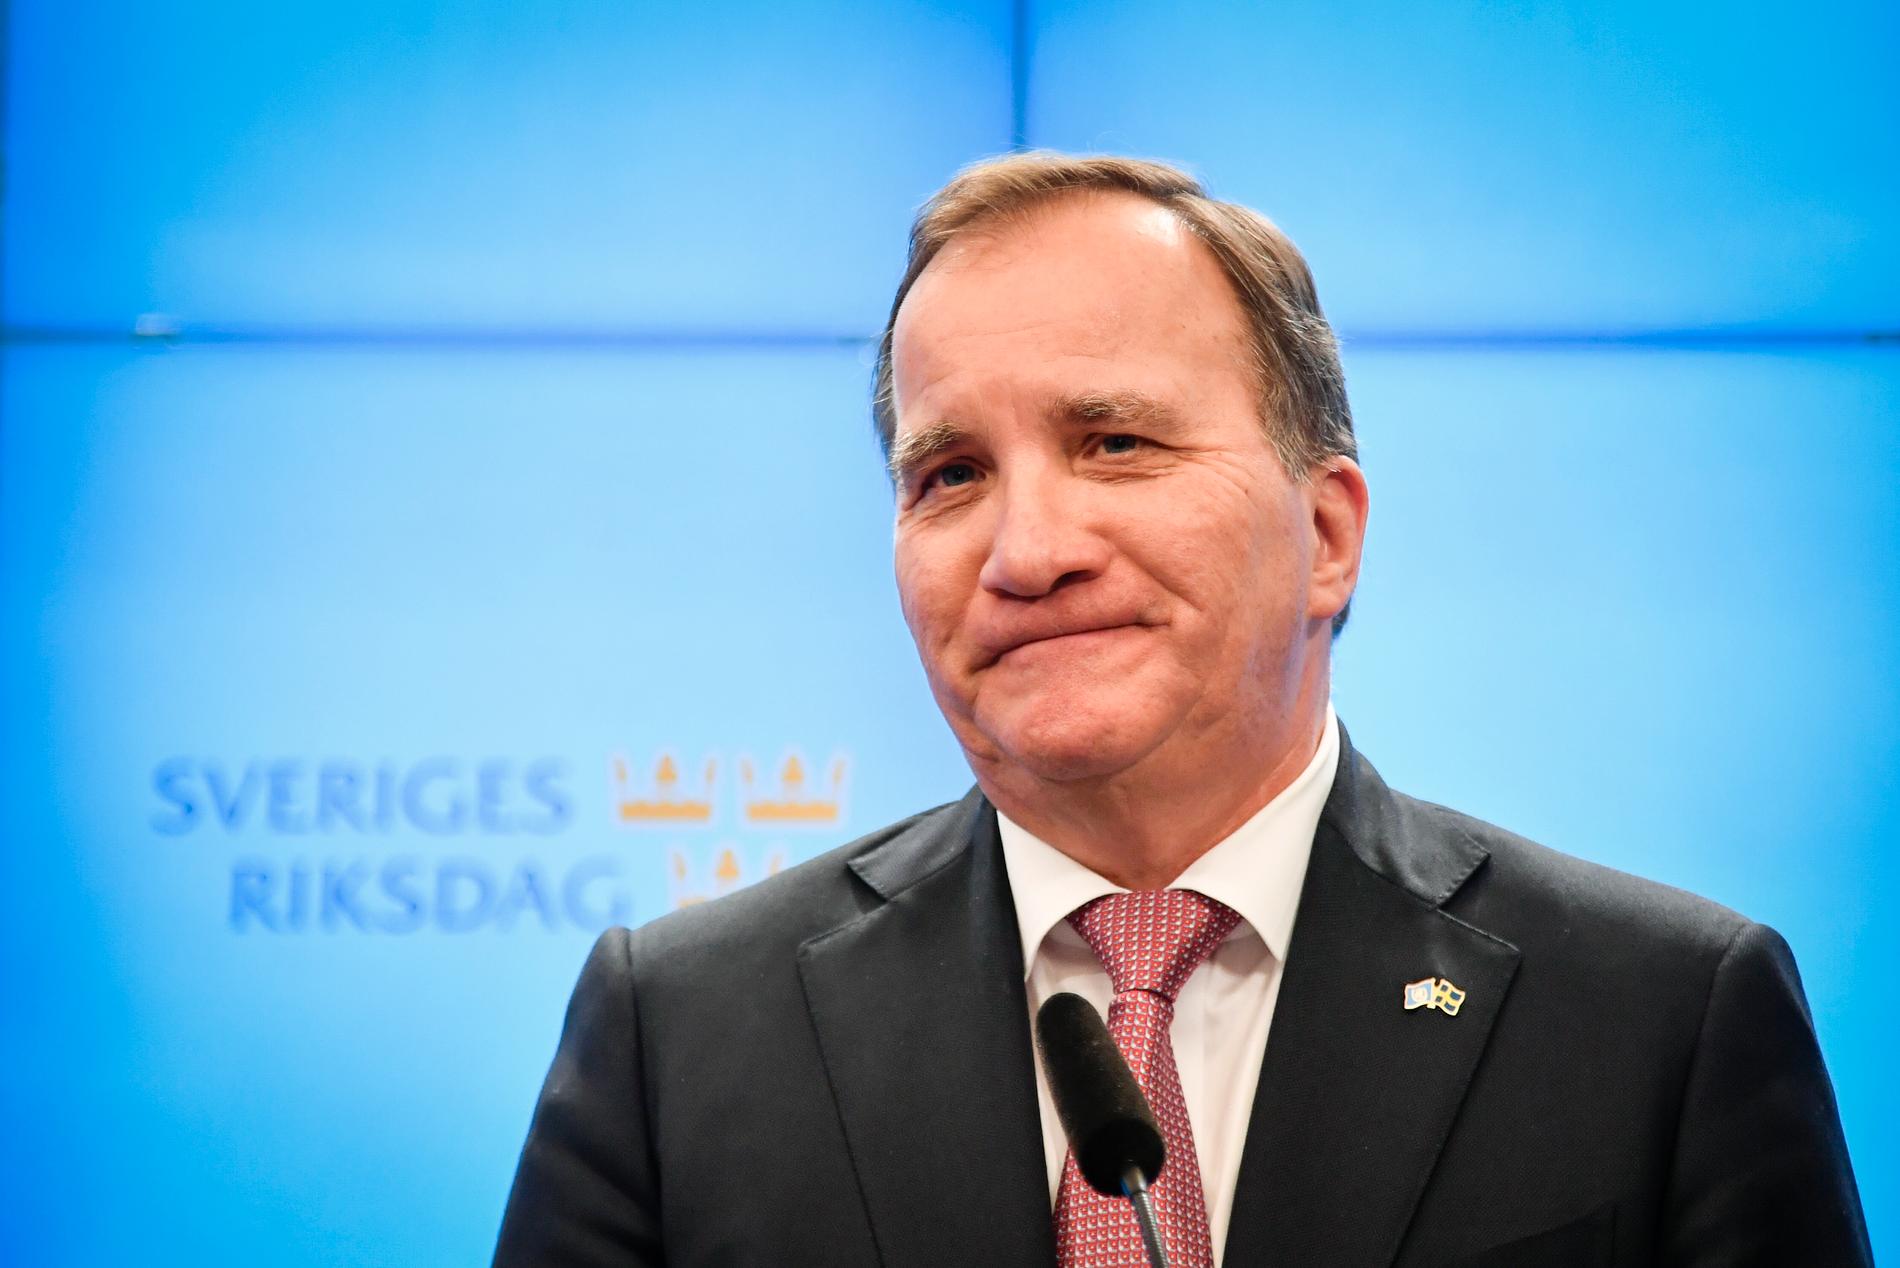 Förre statsministern Stefan Löfven blir ny ordförande för Sipri.